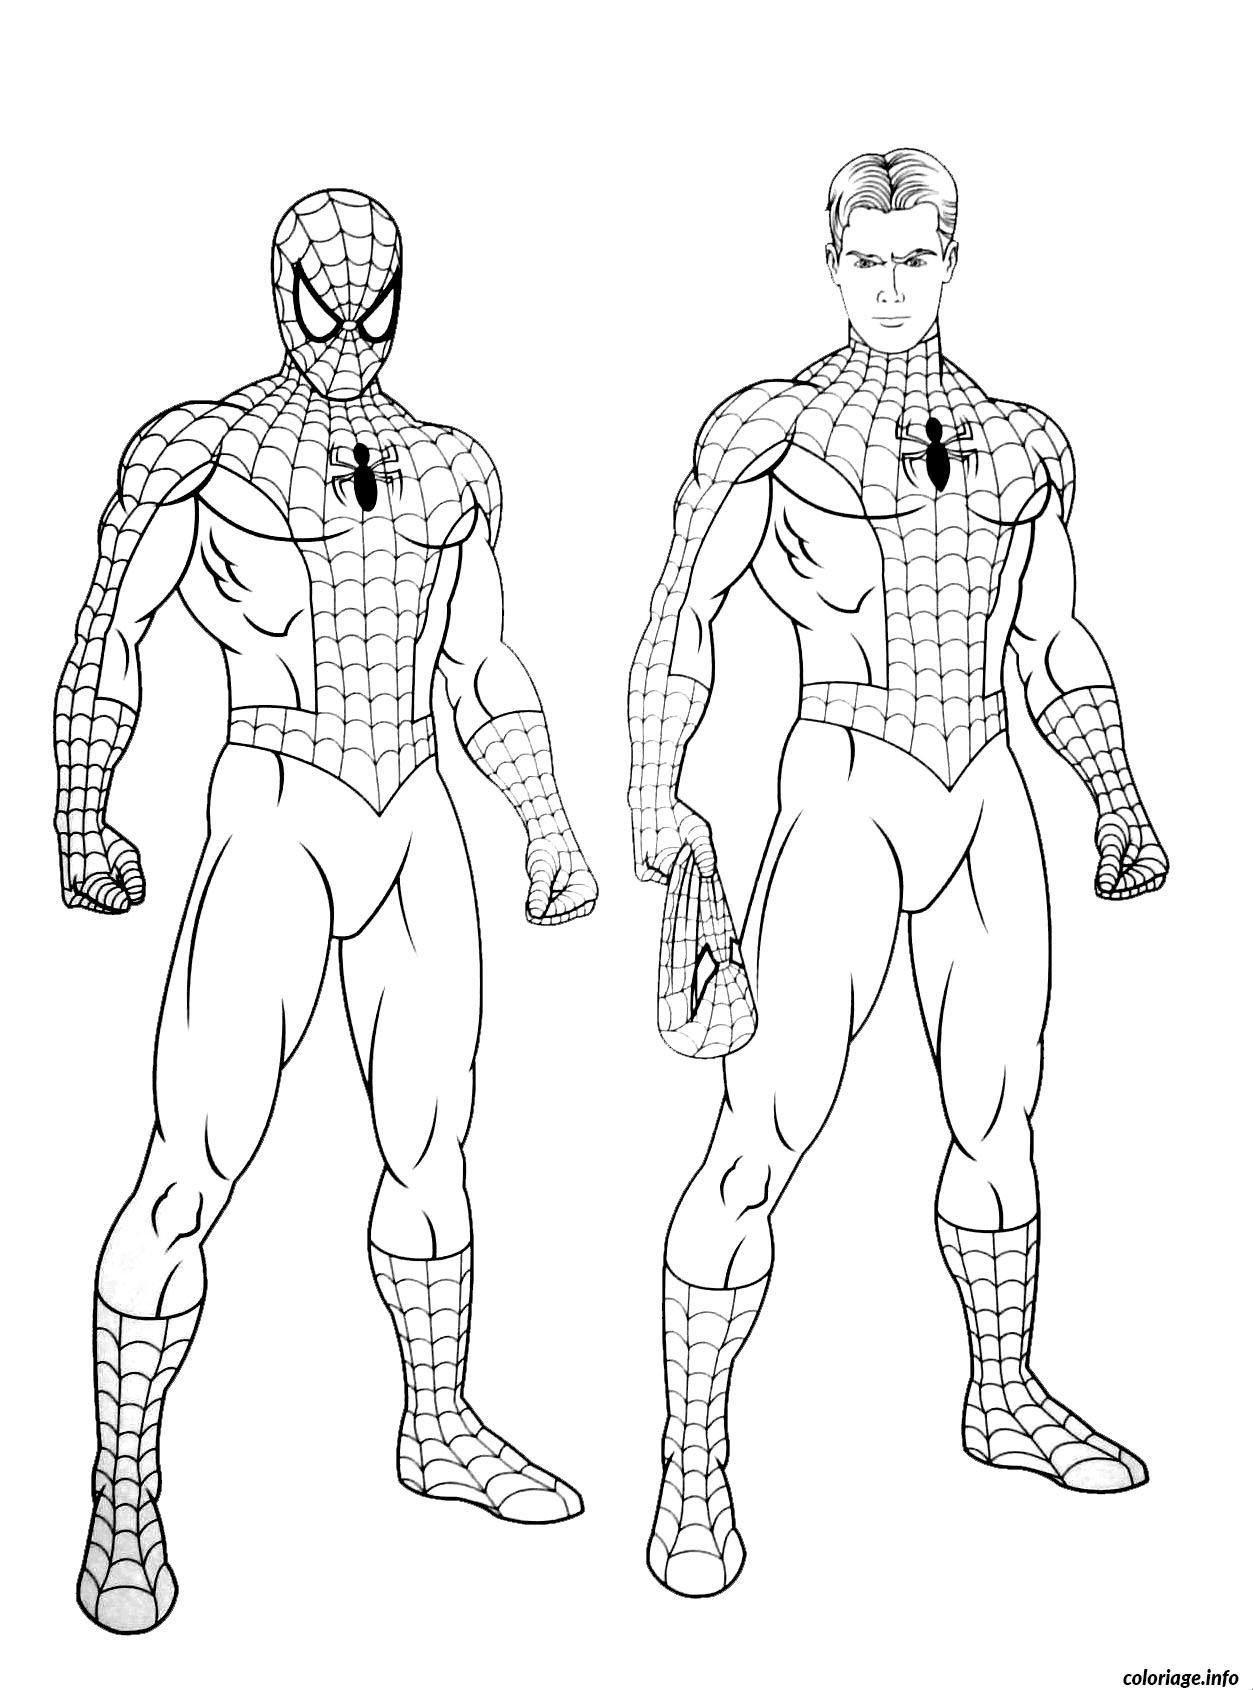 Coloriage Imprimer Spiderman Gratuit - Coloriage Imprimer pour Spiderman Coloriage 